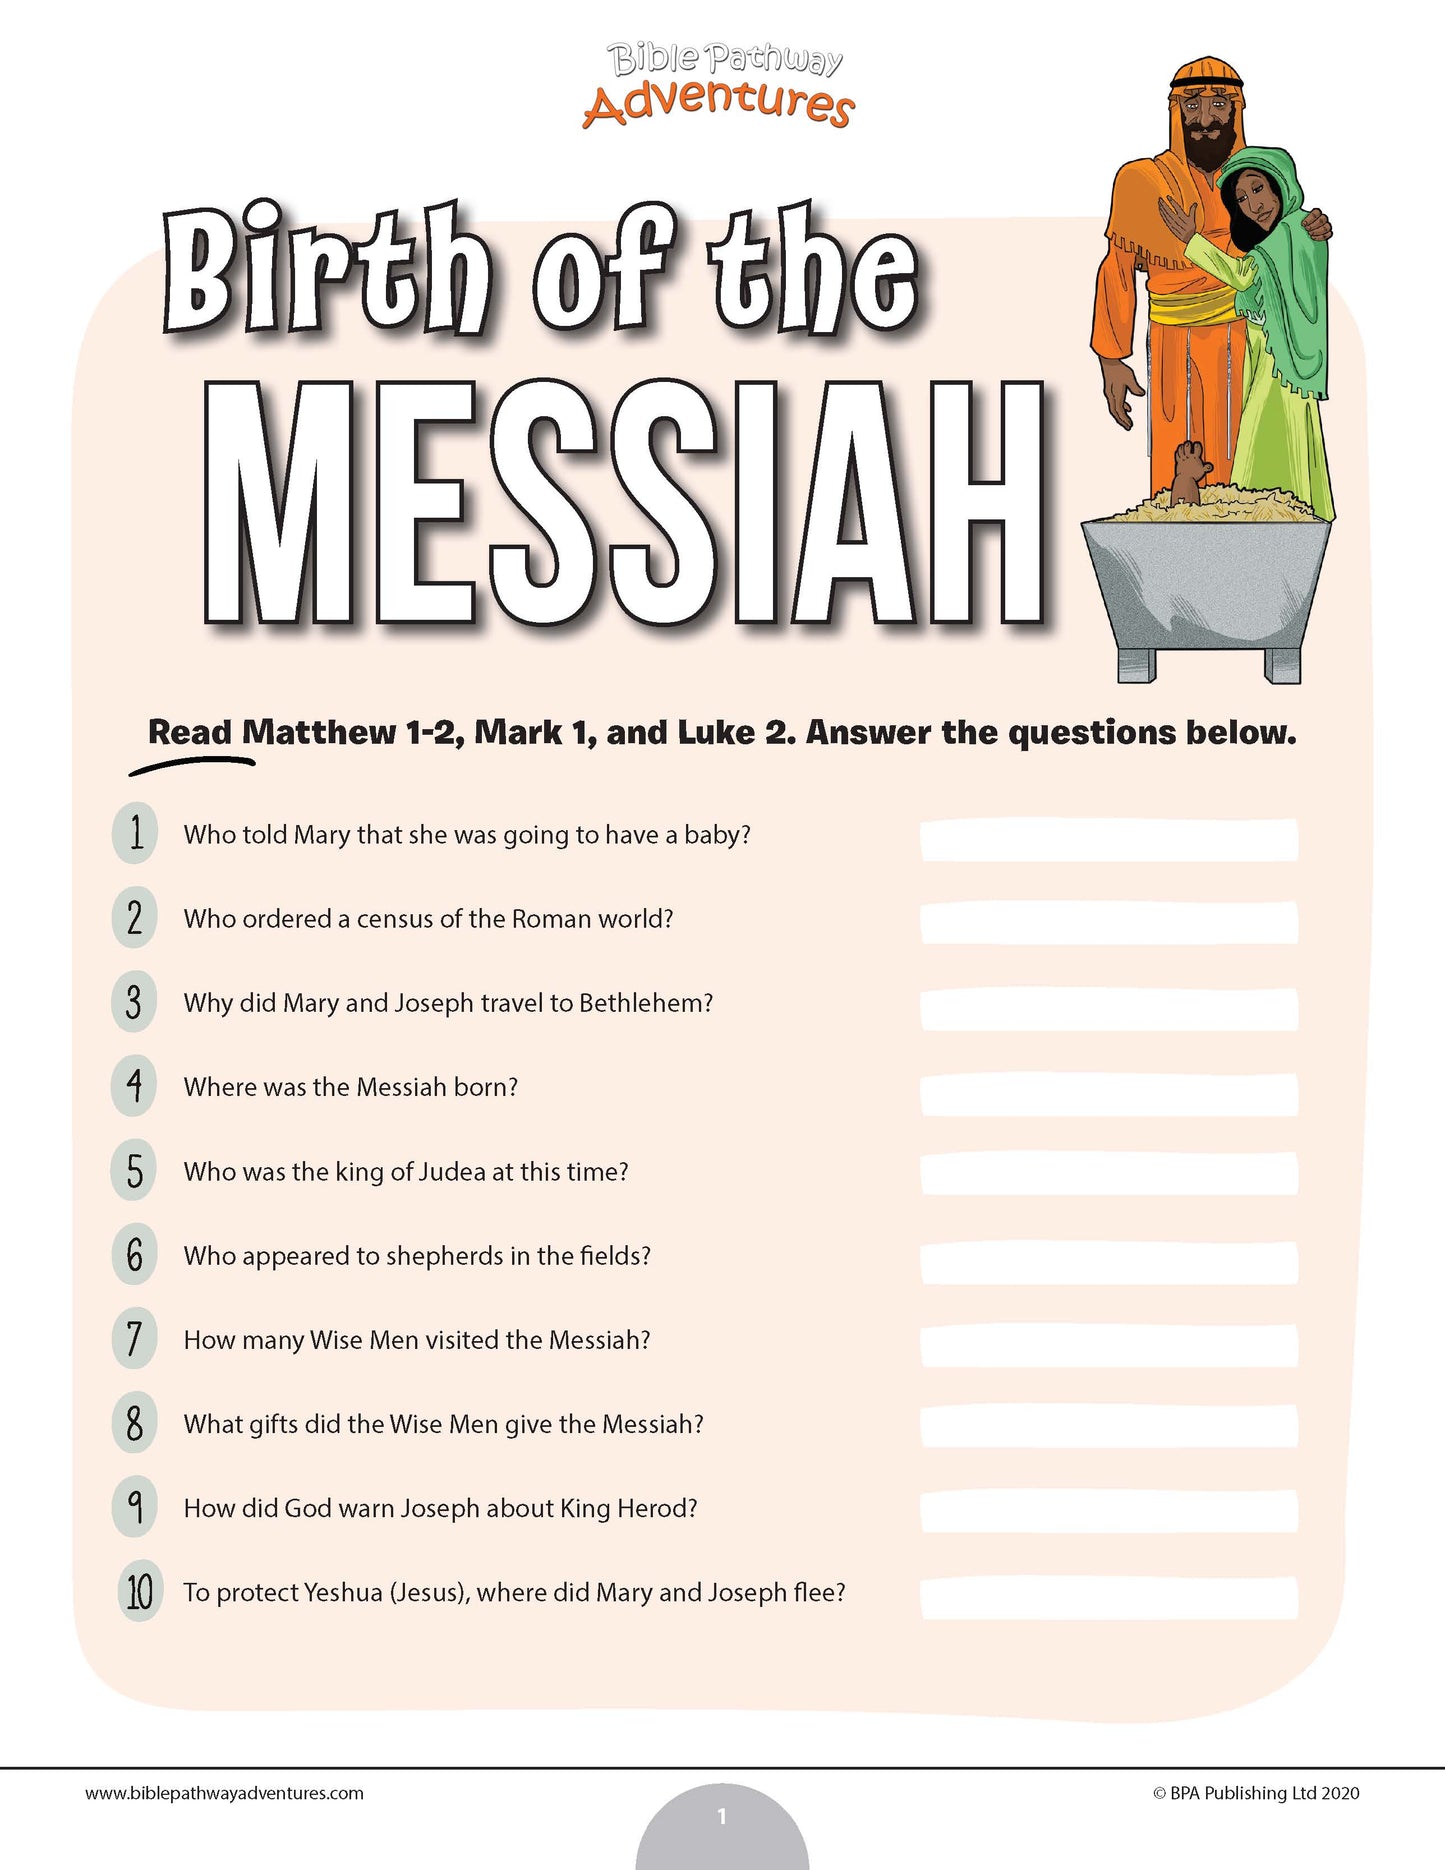 Cuestionario sobre el nacimiento del Mesías